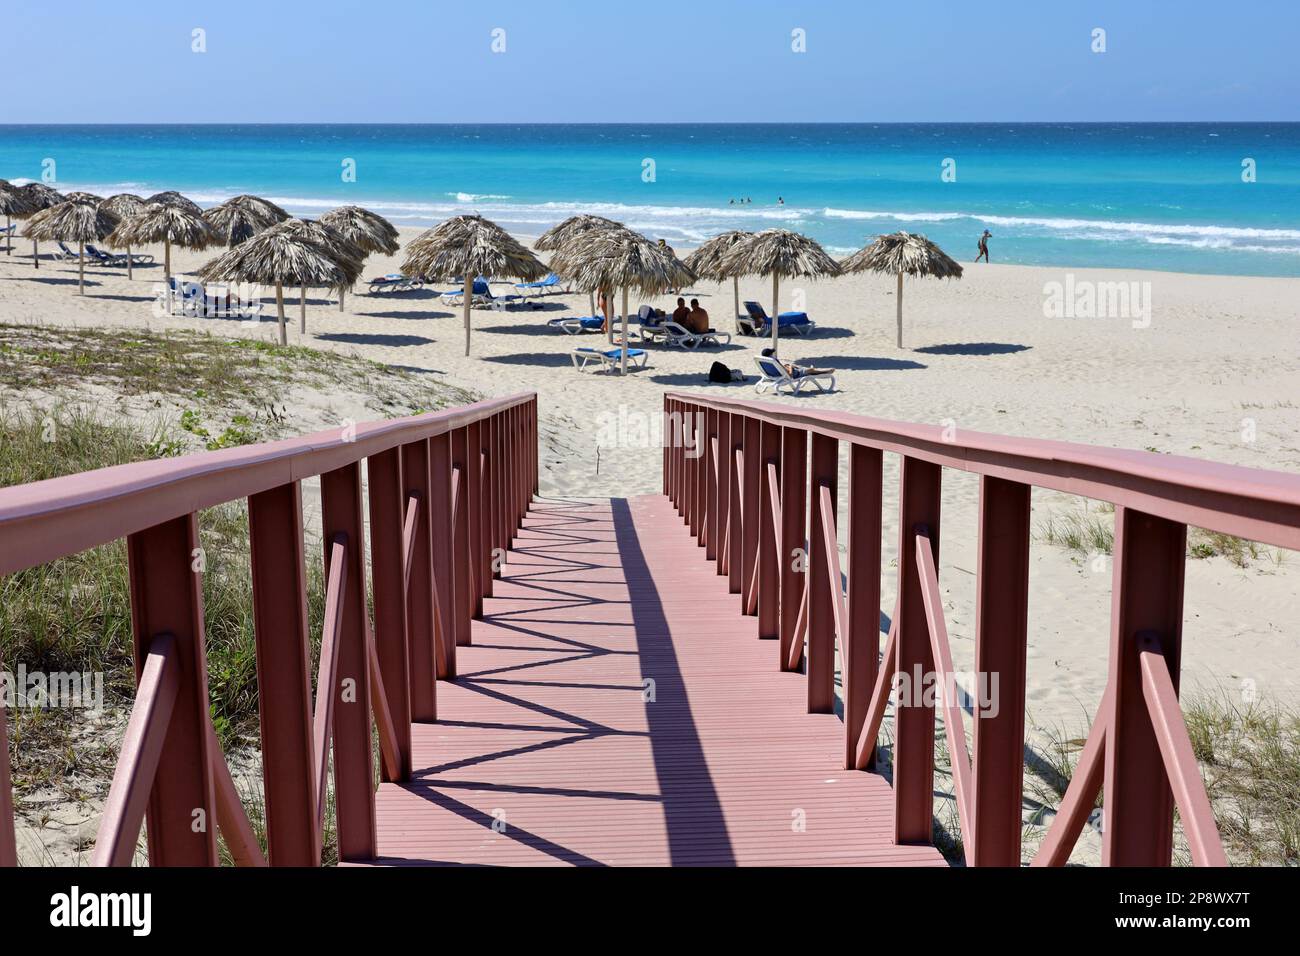 Escaliers menant à la plage tropicale avec sable blanc, parasols en osier et personnes bronzantes. Vue pittoresque sur la côte océanique, station touristique sur l'île des Caraïbes Banque D'Images